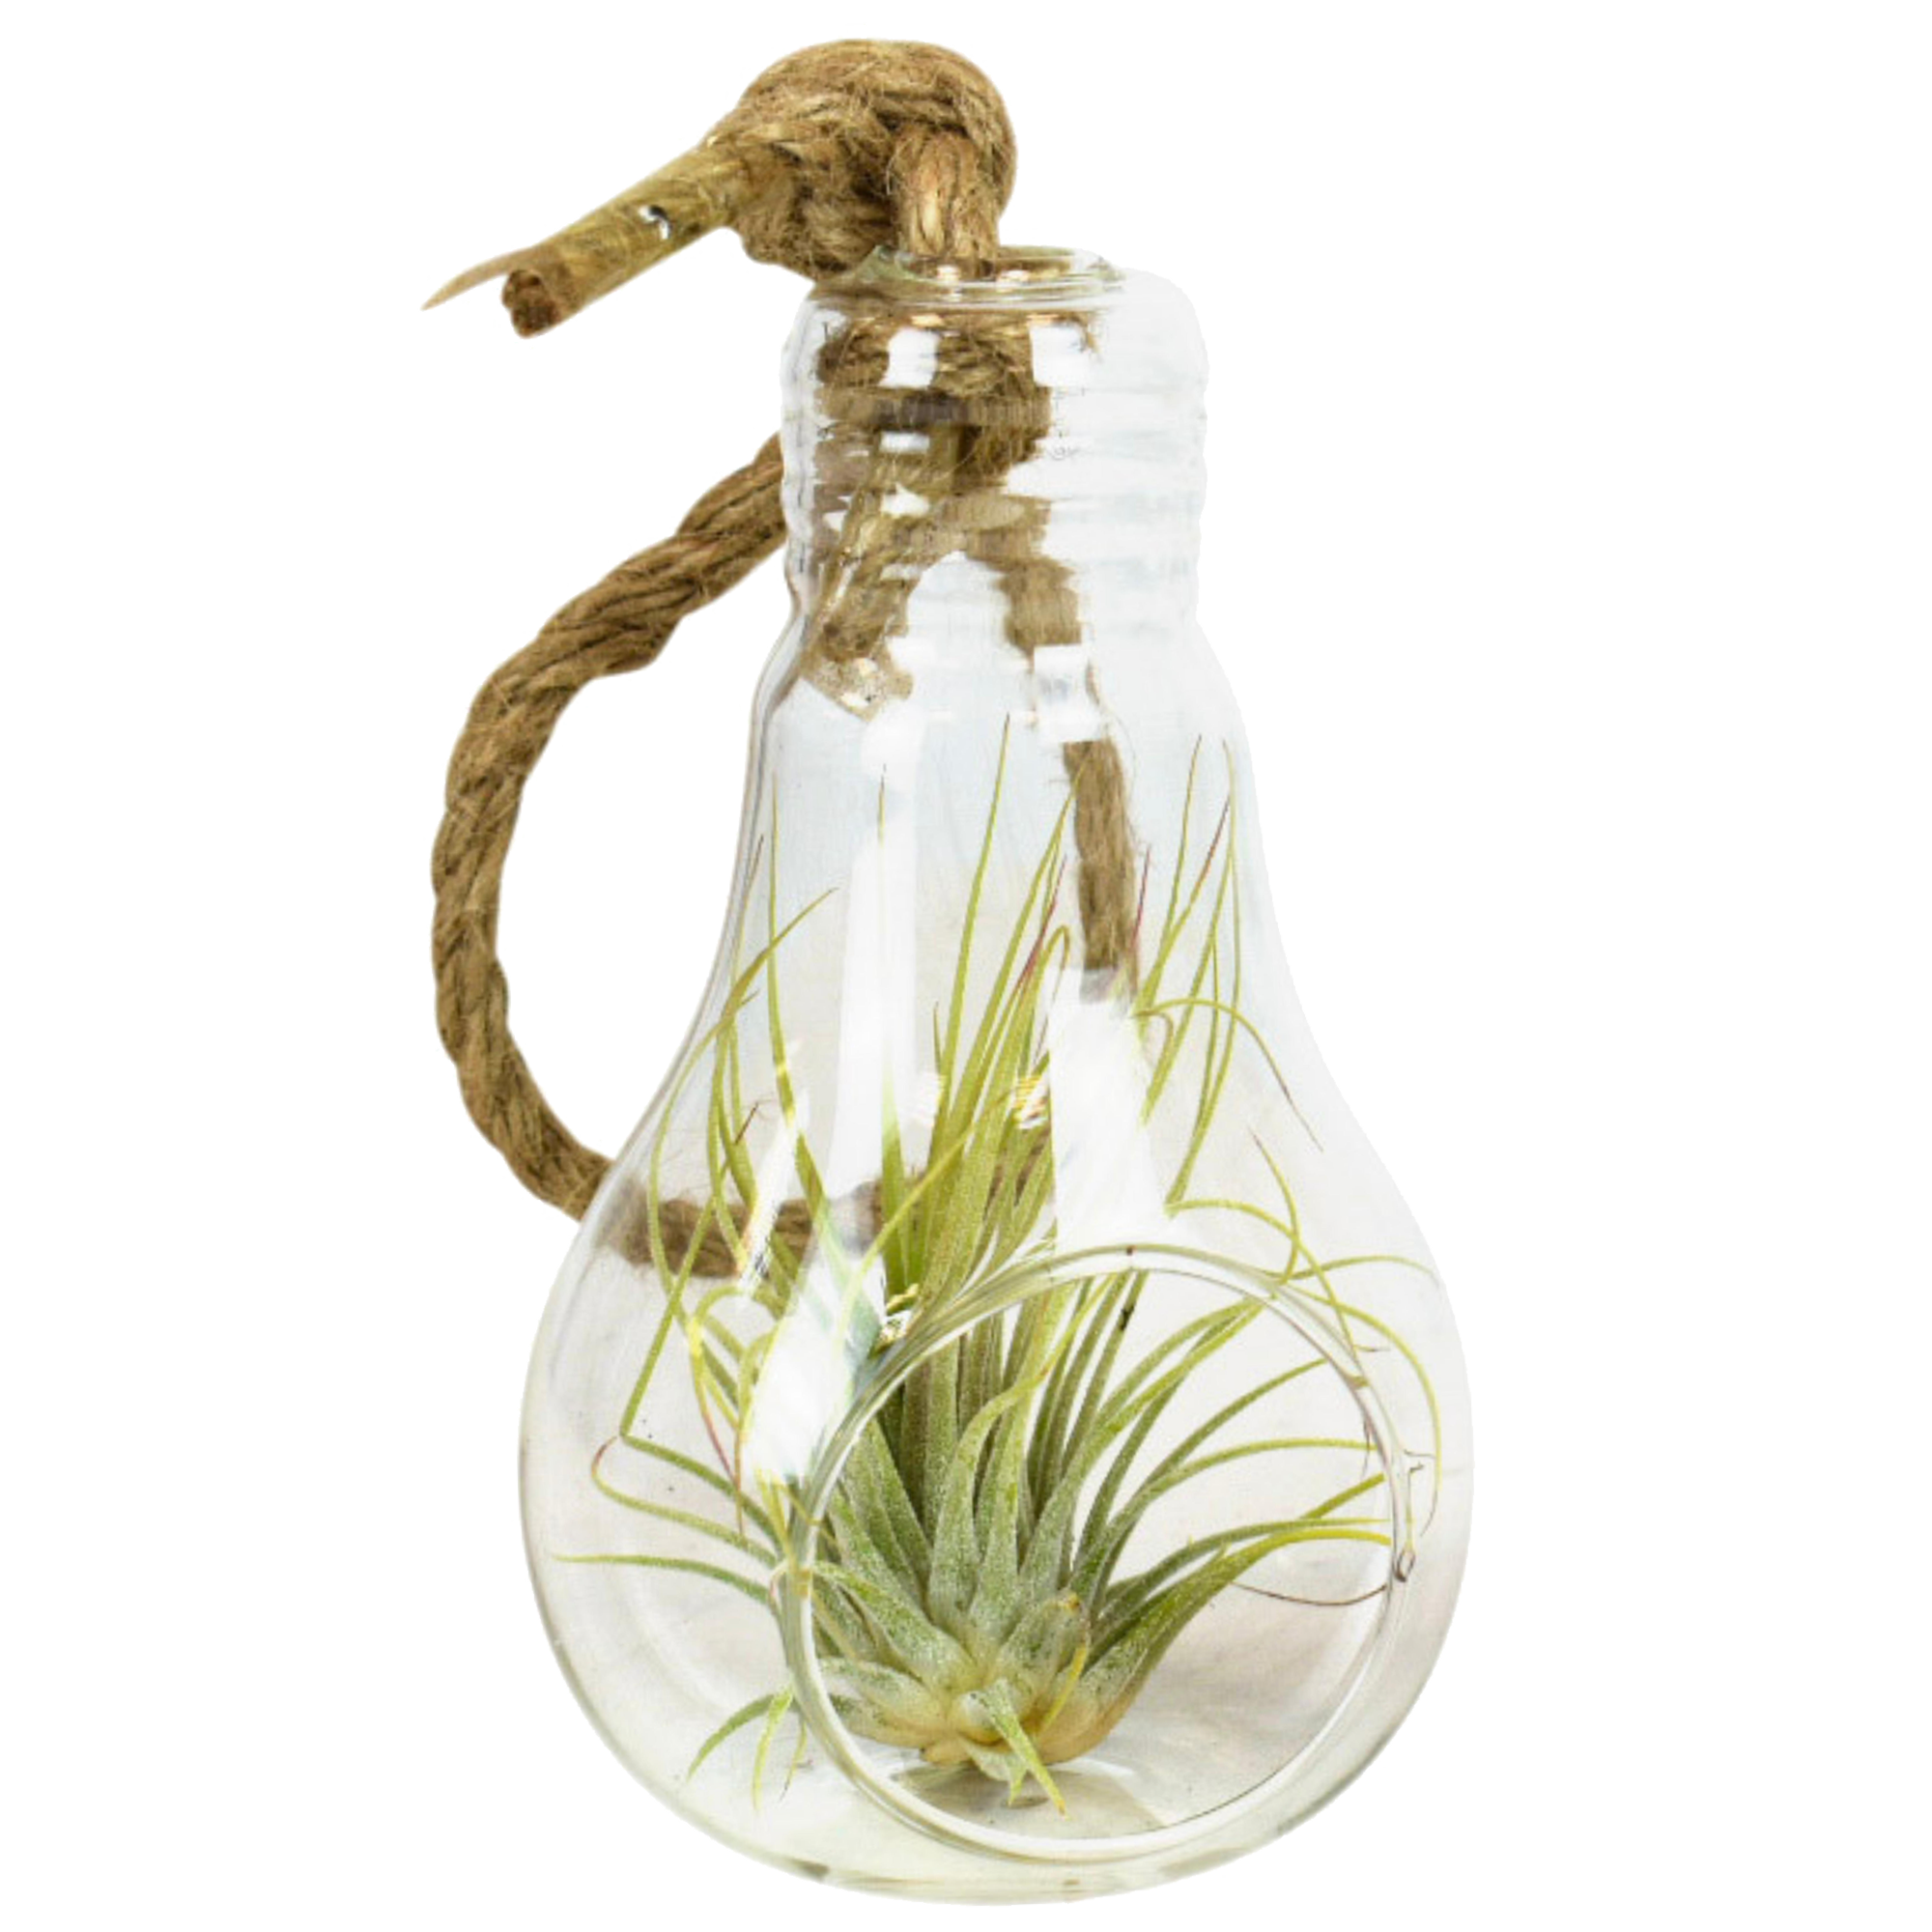 Tillandsie in Glaslampe am Seil, verschiedene Sorten + product picture